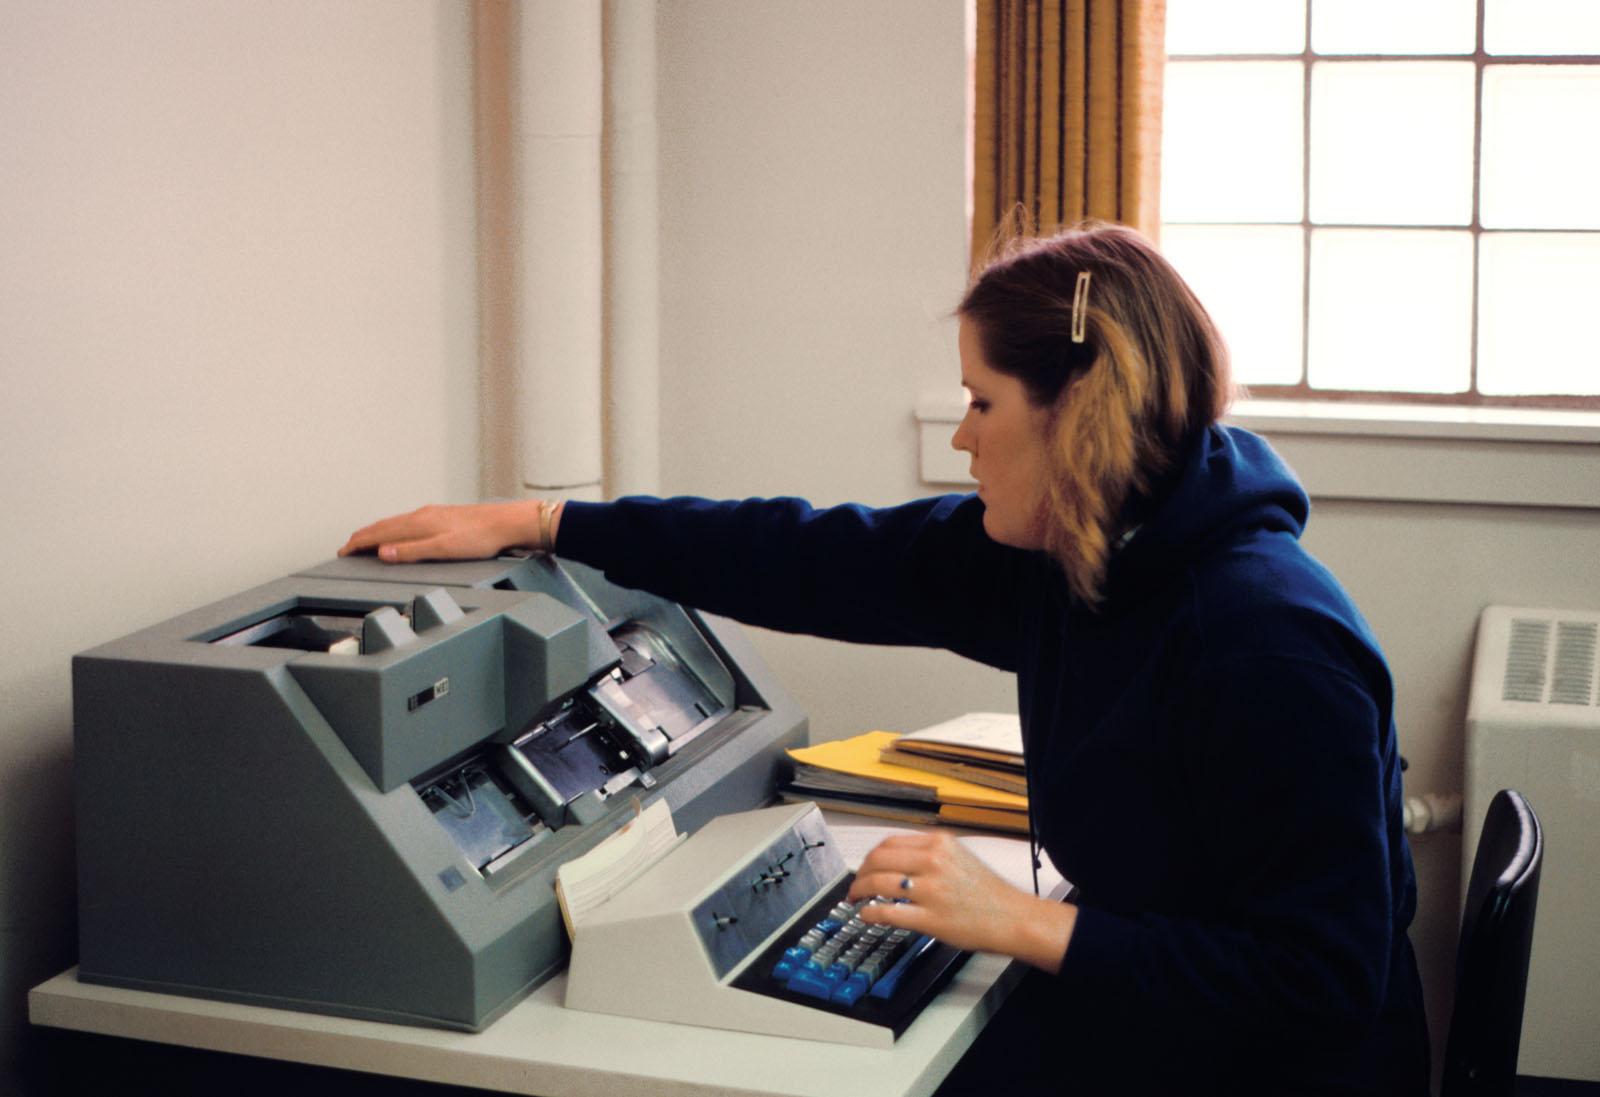 早期的计算机使用IBM打孔卡进行数据文件和输入. 打孔卡在西北航空公司一直使用到1986年.